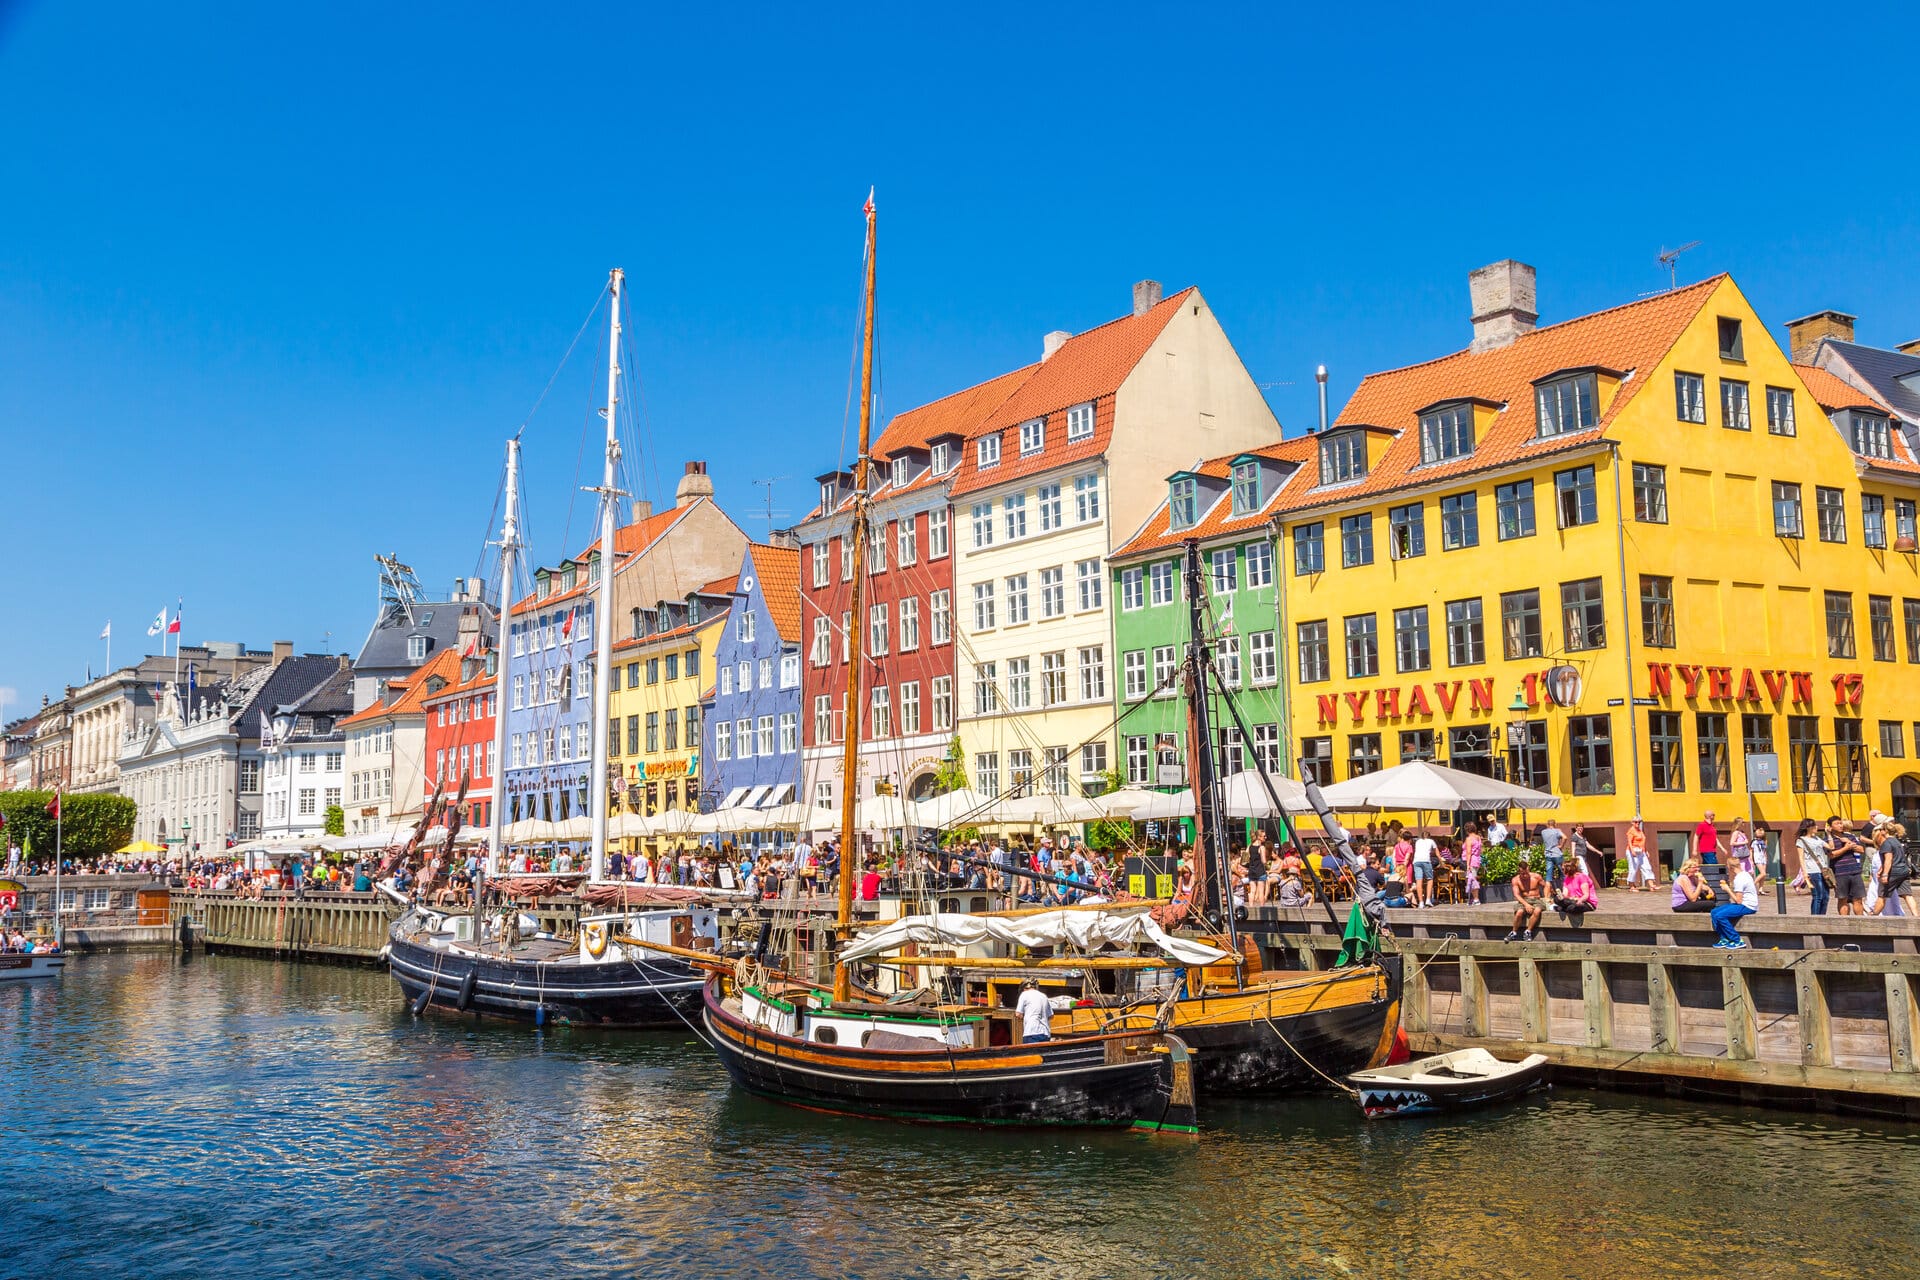 Sommer in Nyhavn in Kopenhagen. Viele Menschen sitzen an der kaimauer oder in Cafés und Restaurants.